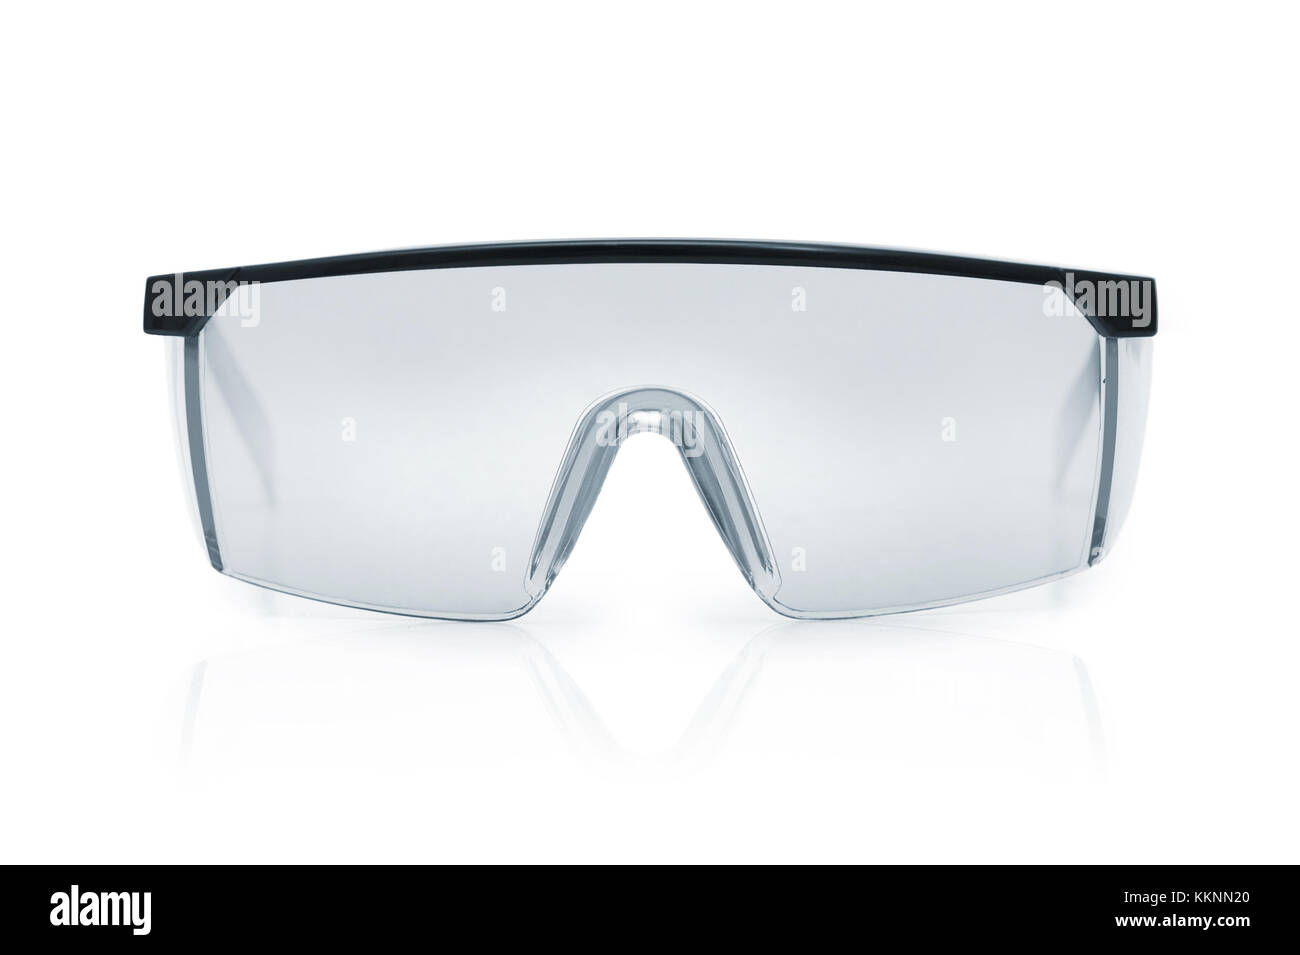 Des lunettes de sécurité pour protéger les vêtements de protection. L'œil humain. seul objet isolé sur un fond blanc. Banque D'Images